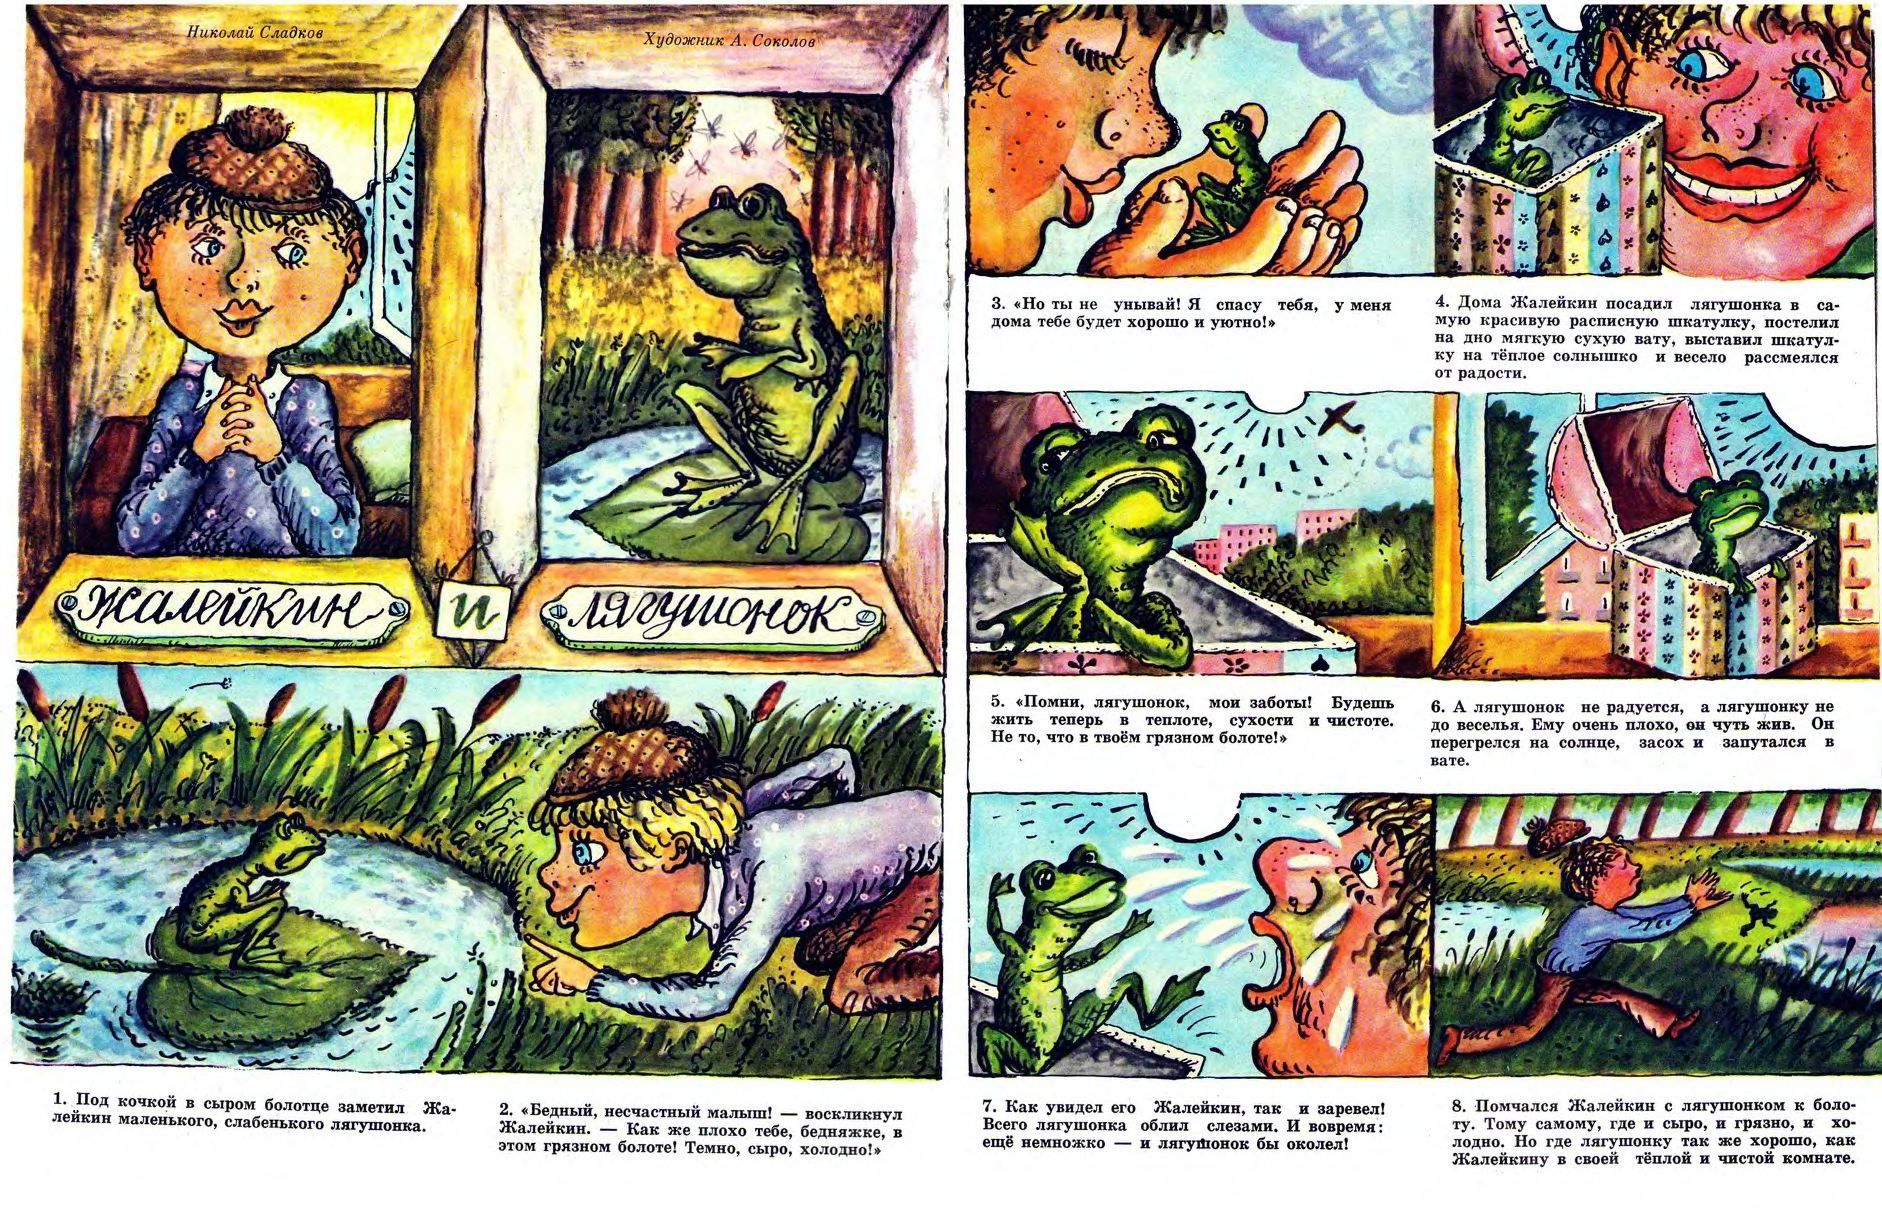 Жалейкин и лягушонок,Сладков,рис.А.Соколова,(Весёлые картинки, 1980-6).jpg